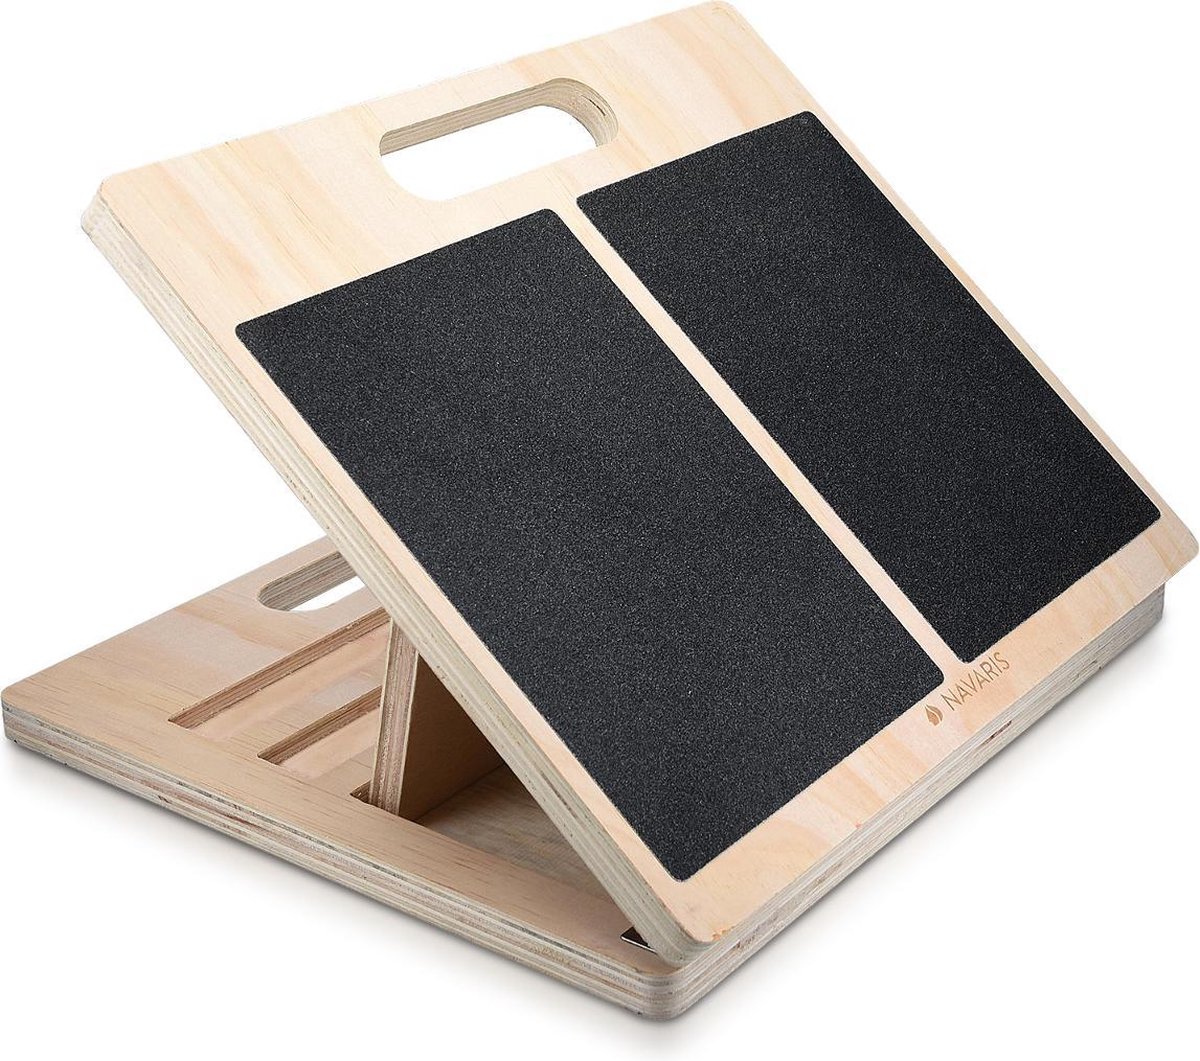 Navaris verstelbaar anti-slip stretch board - Houten incline board - 3 standen - Voor het rekken van kuiten, voeten, enkels, benen en rug - Inklapbaar